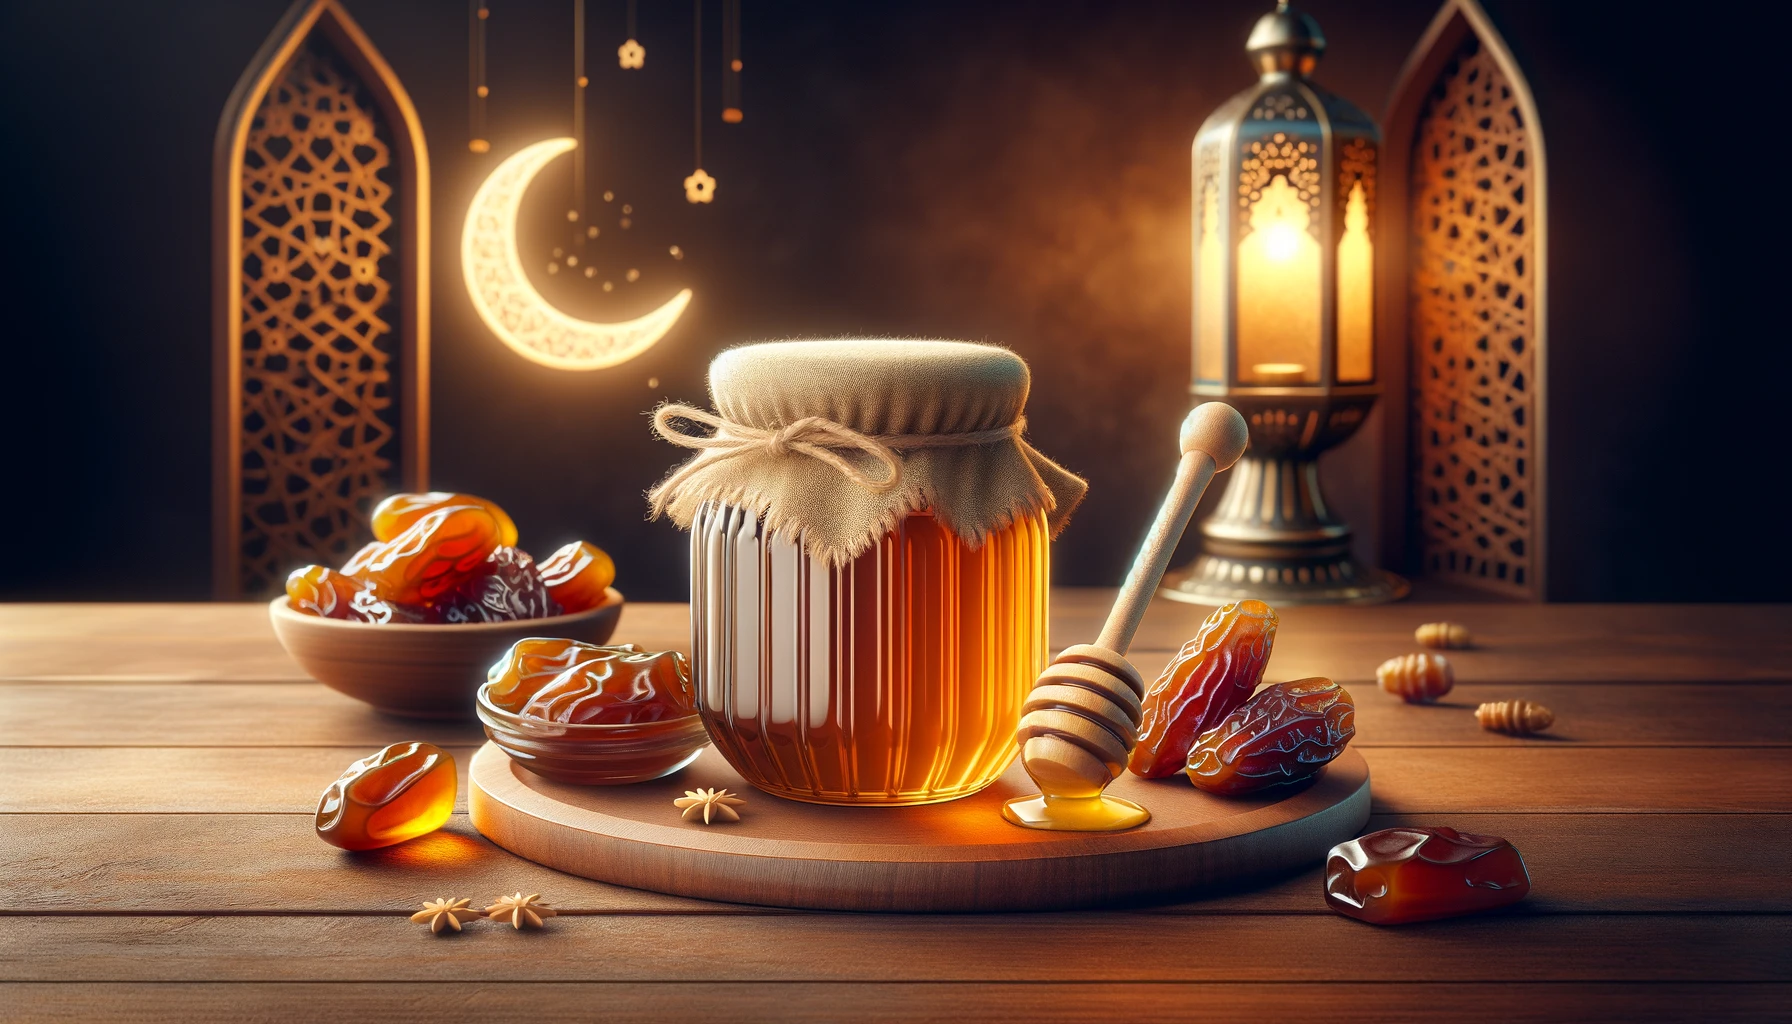 العسل في رمضان كيف يجعلك أكثر نشاطًا؟